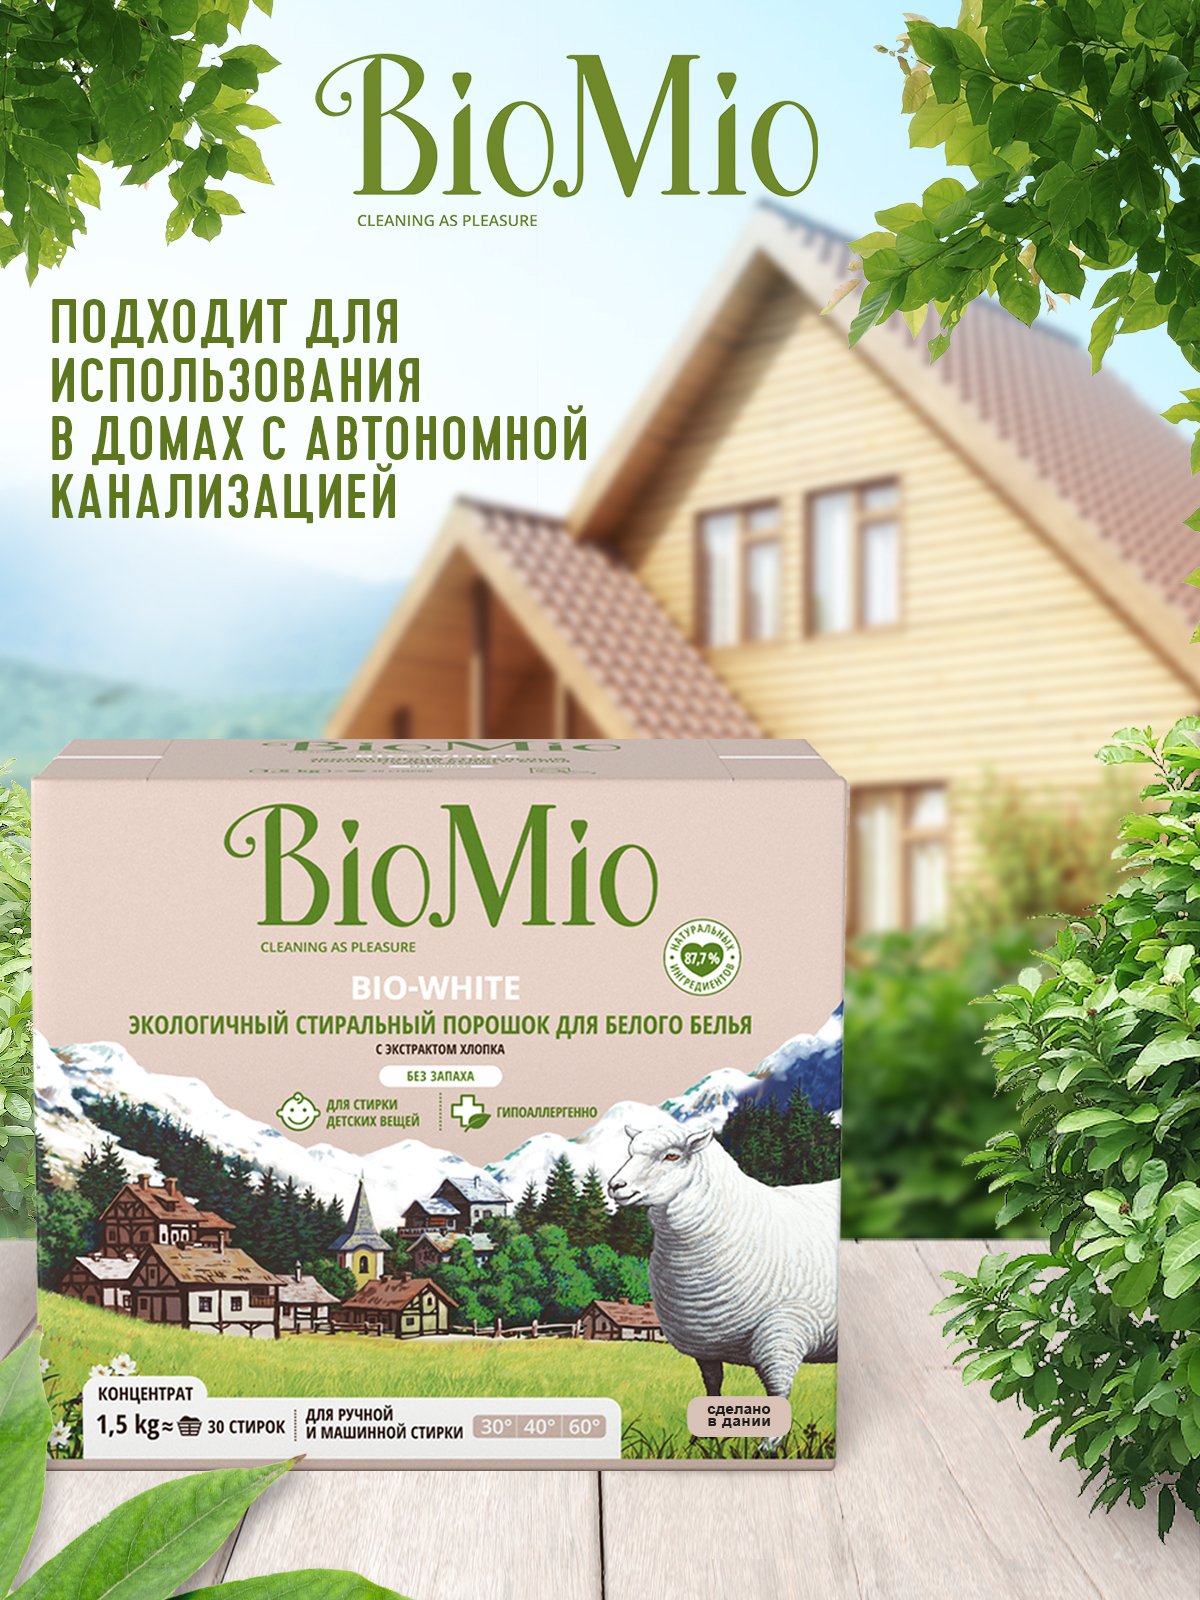 Пральний порошок для білої білизни BioMio Bio-White, концентрат, 1,5 кг - фото 6